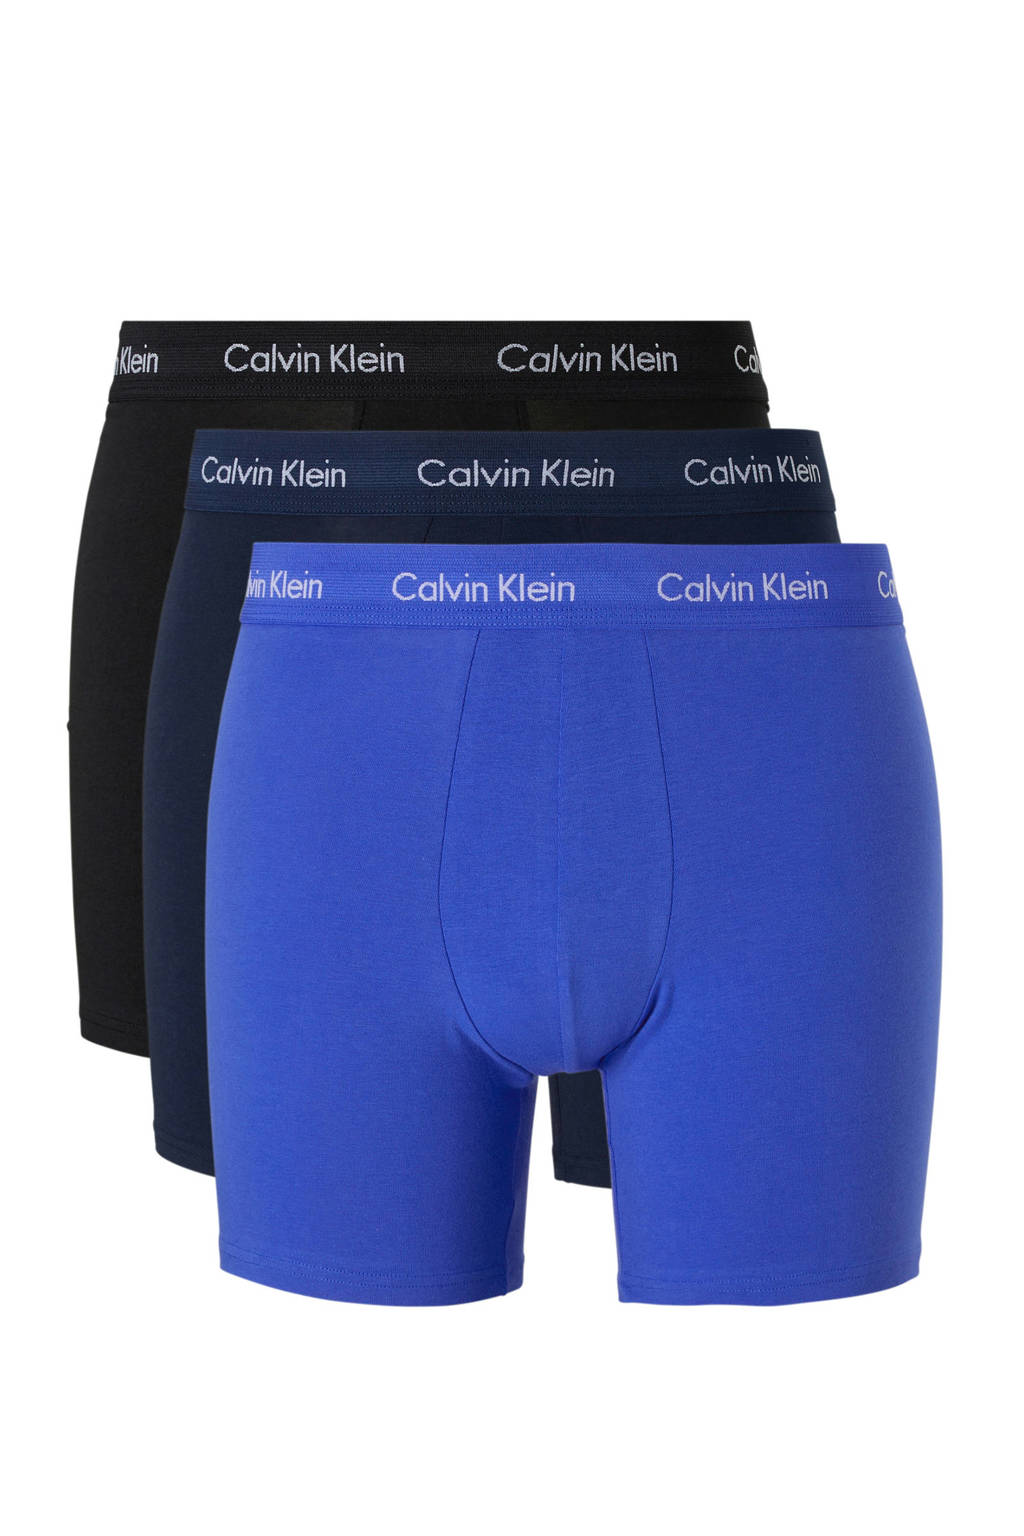 CALVIN KLEIN UNDERWEAR boxershort (set van 3), lichtblauw/ donkerblauw/ zwart